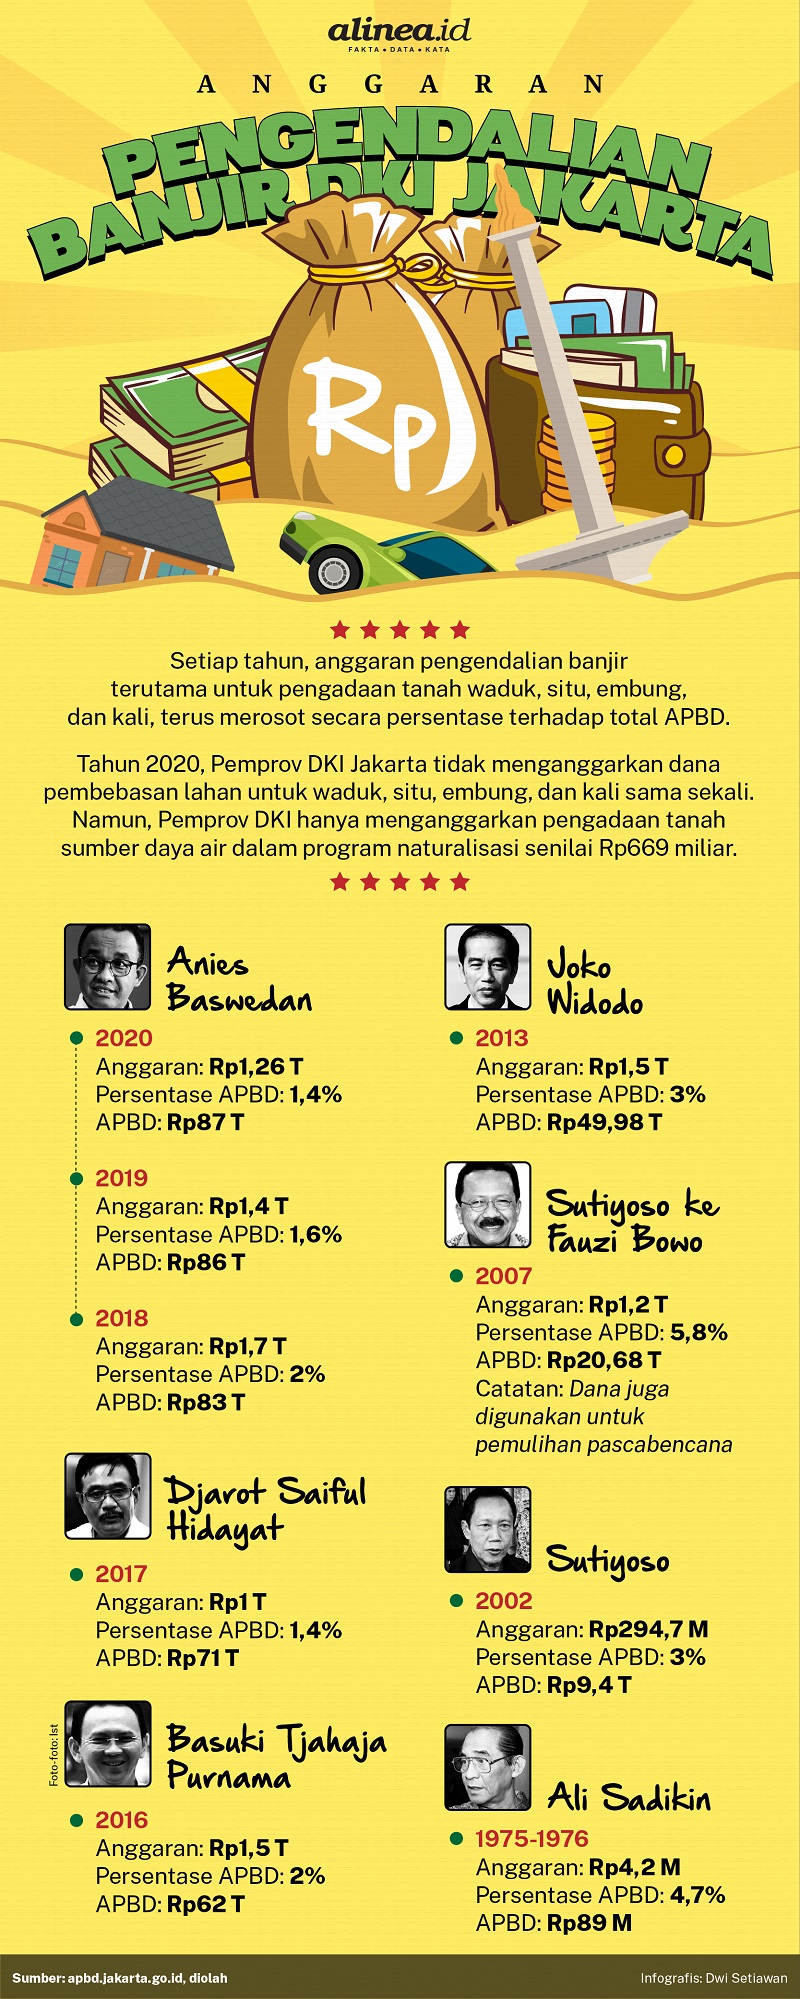 Infografik anggaran pencegahan banjir DKI Jakarta. Alinea.id/Dwi Setiawan